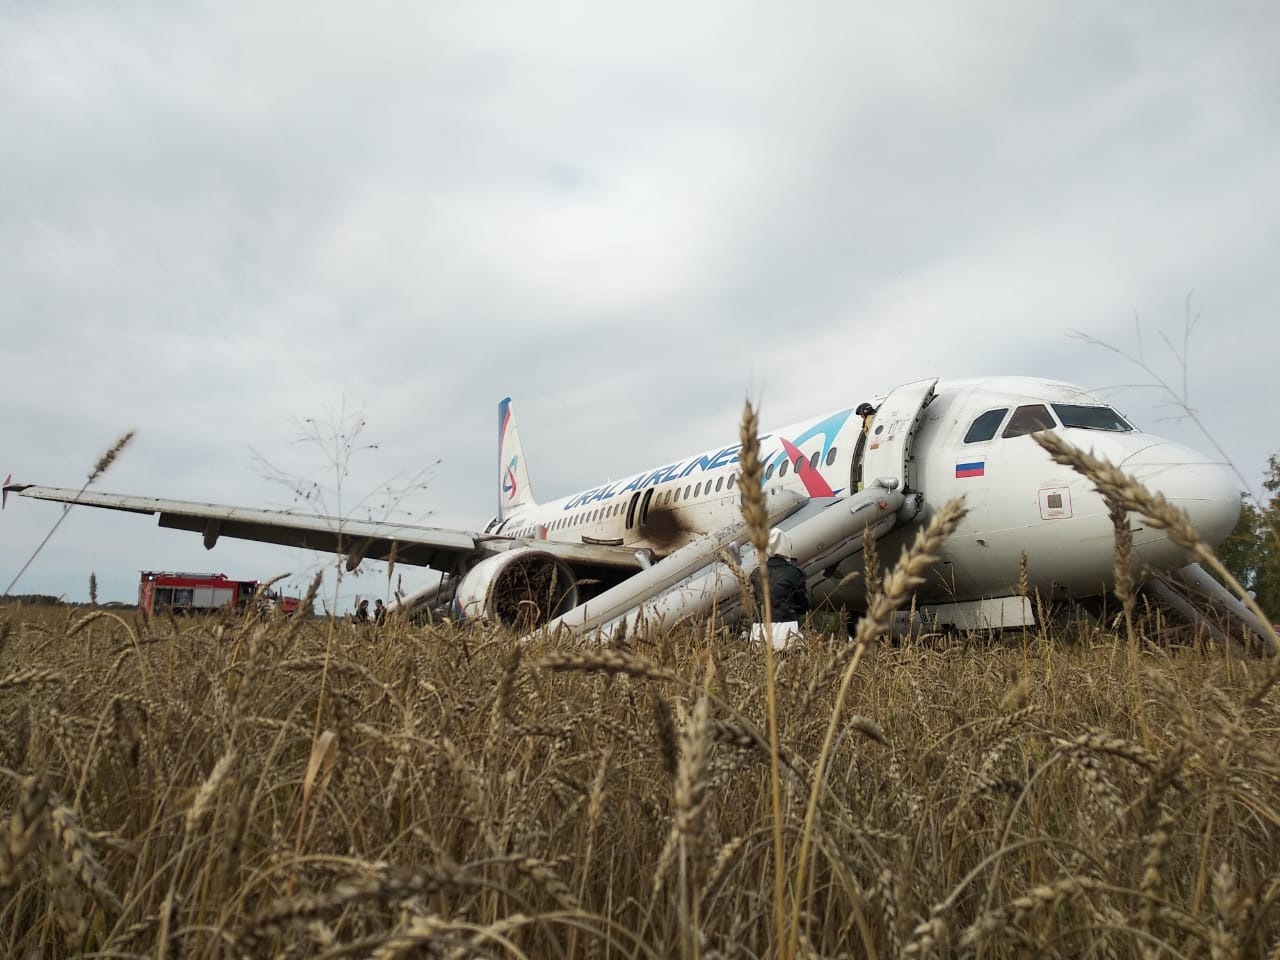 «Уральские авиалинии» заплатят за испорченное поле, на которое сел самолет #Новости #Общество #Омск